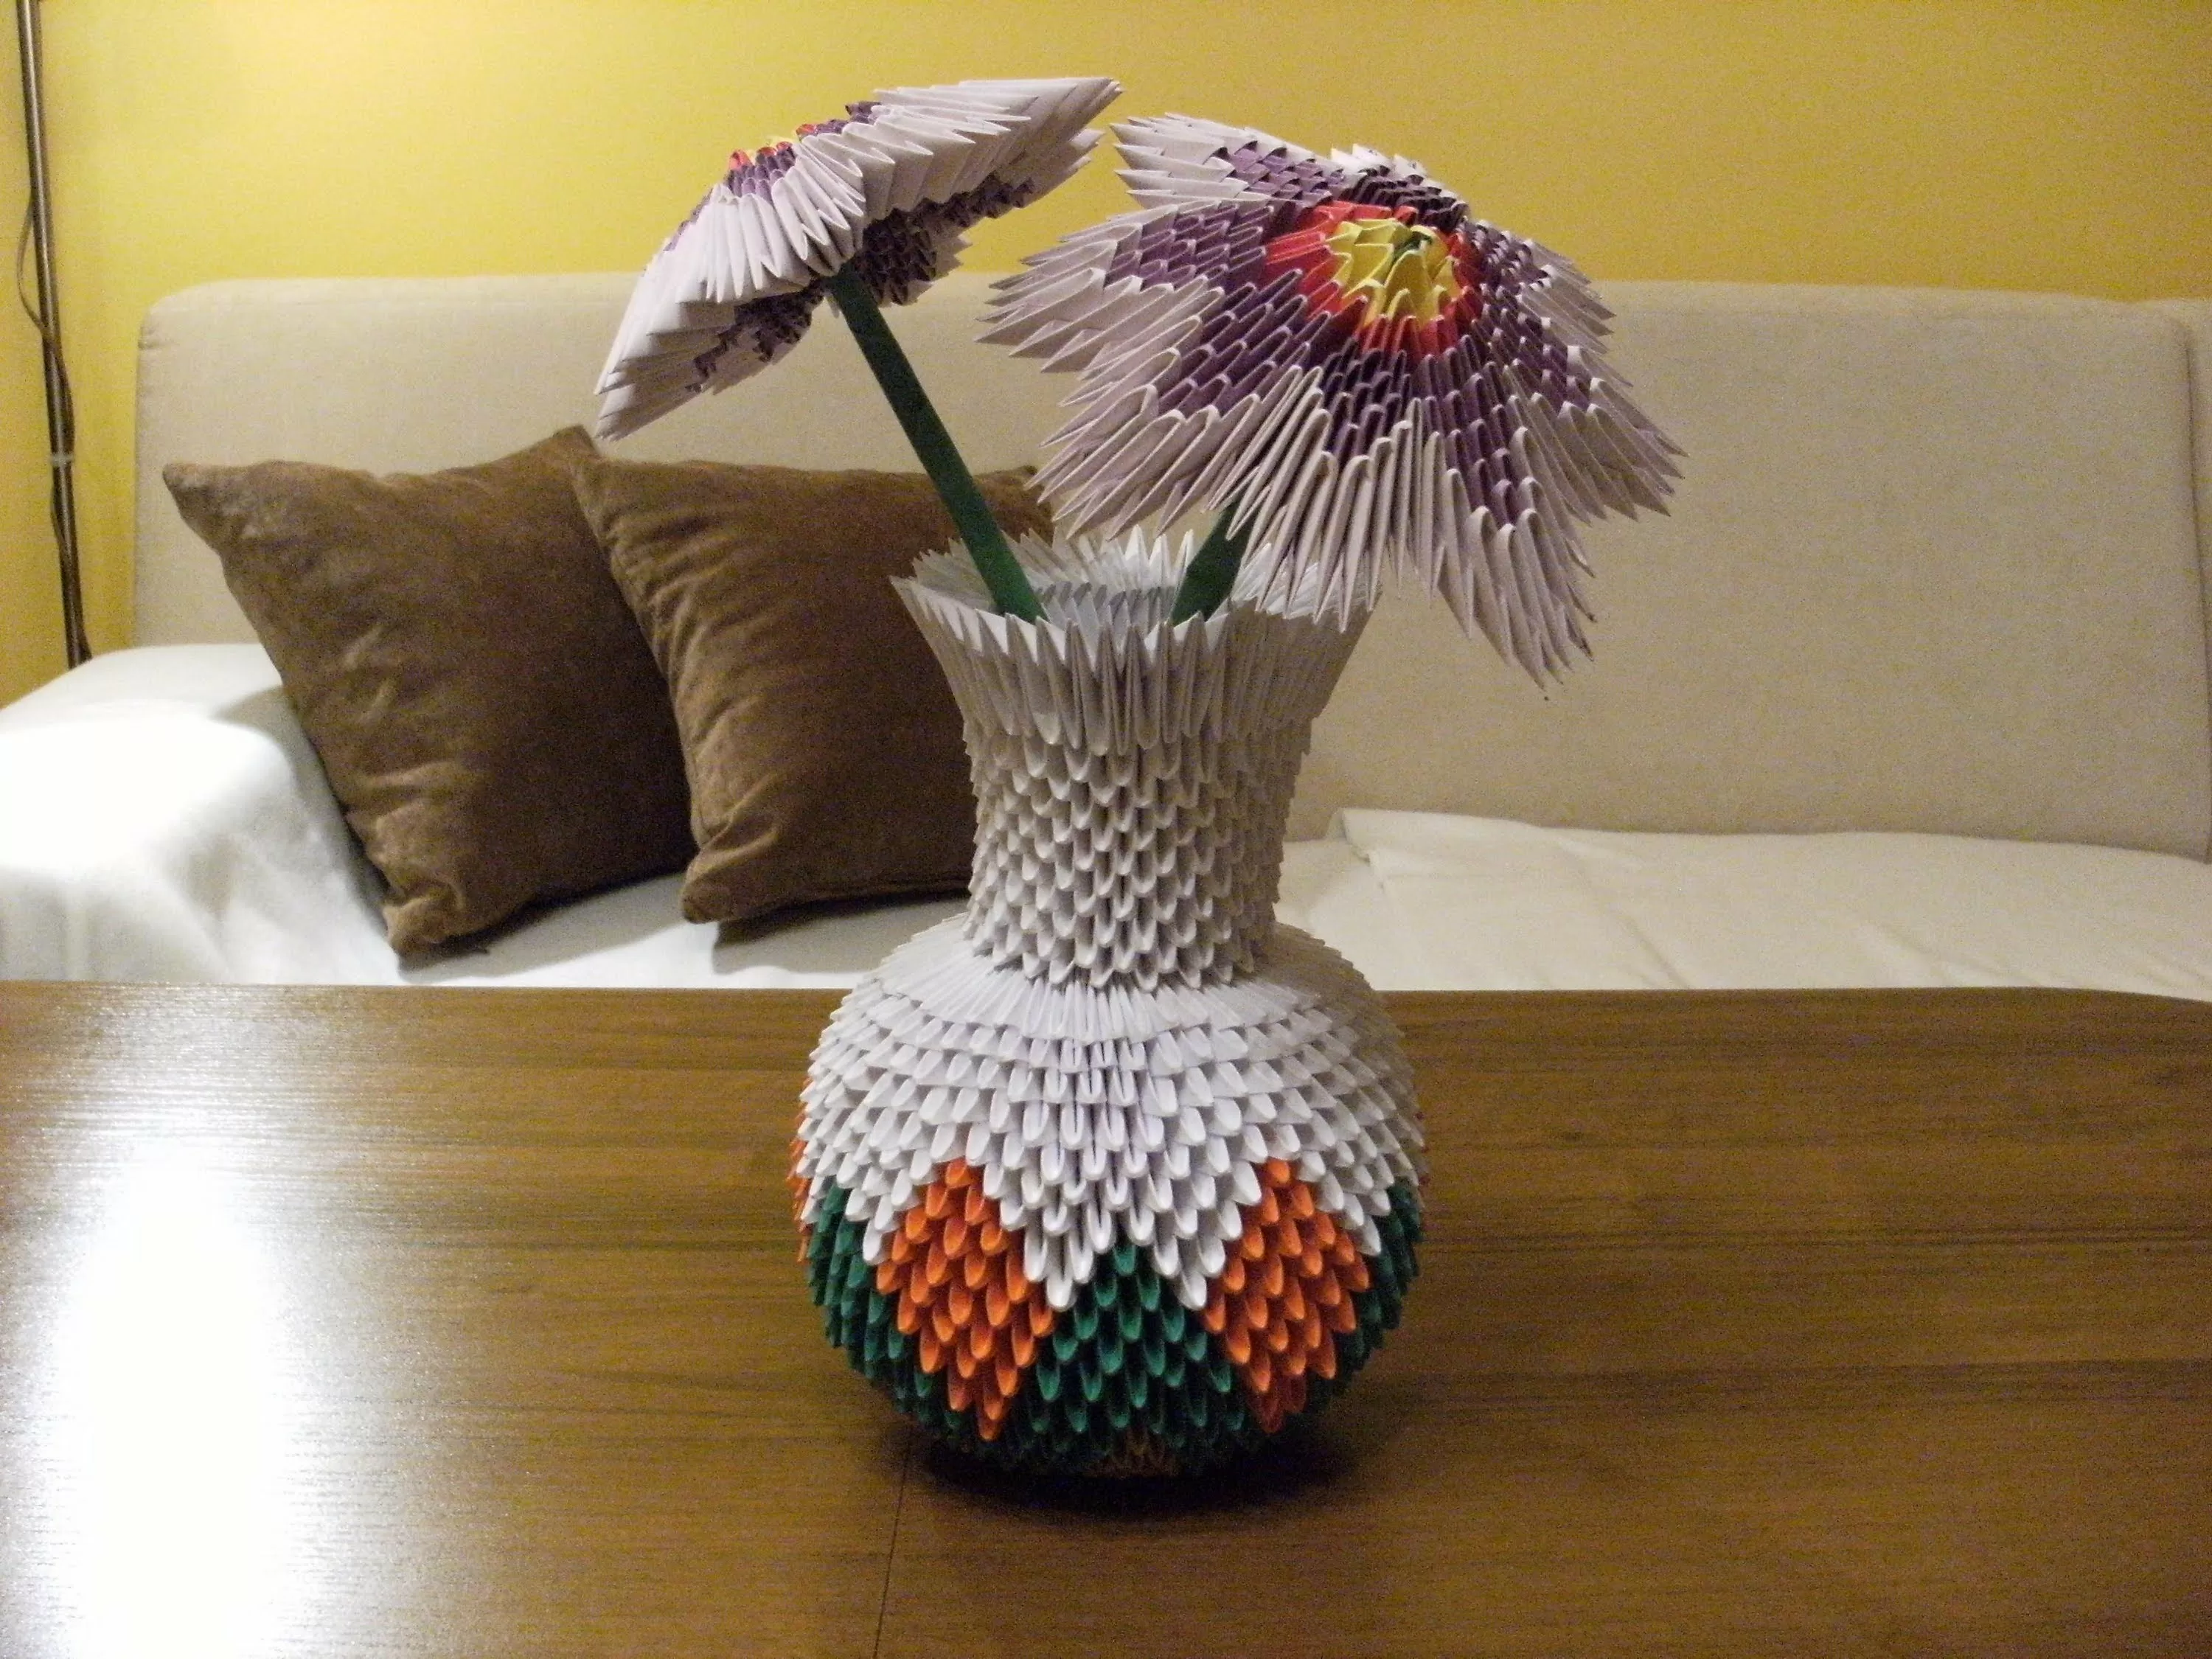 Ваза оригами - изготовление цветочной вазы в технике модульного оригами. Простая ваза, фигурная